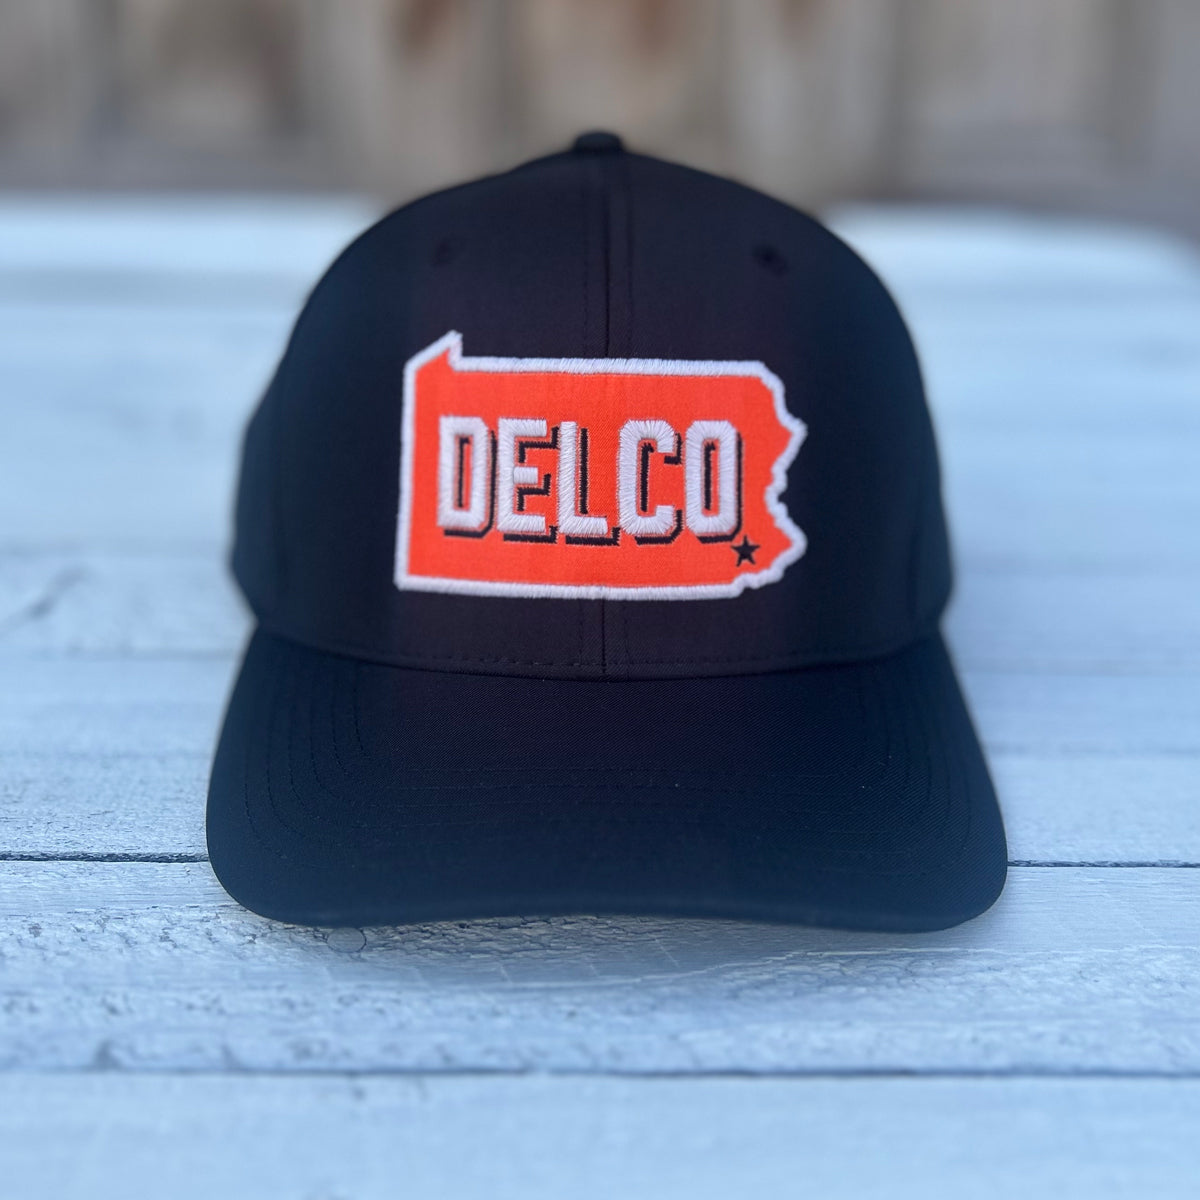 DELCO Black & Orange